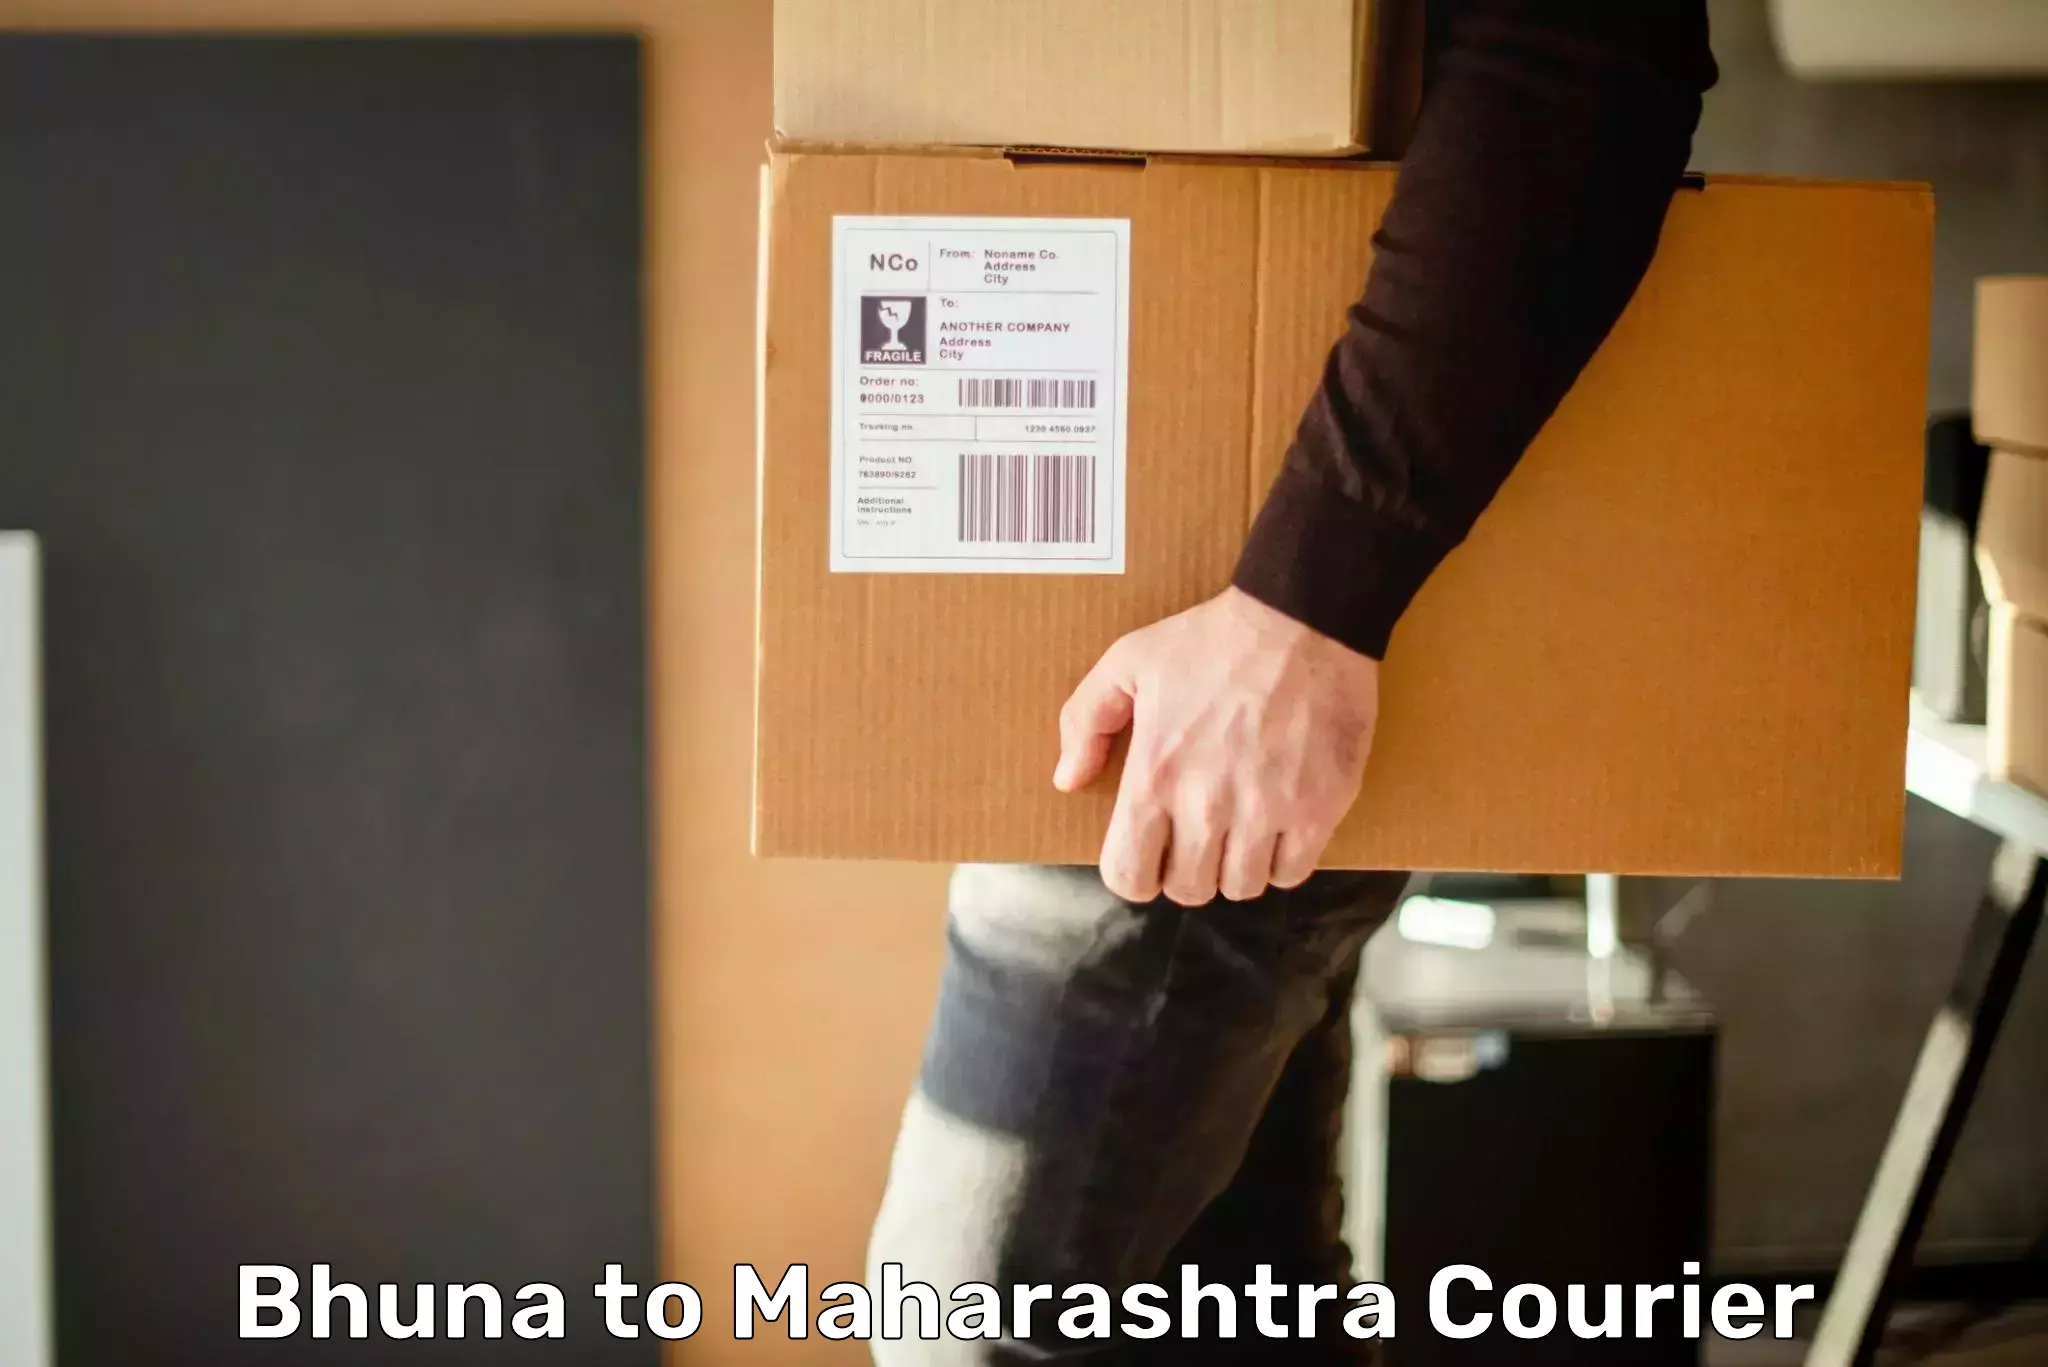 Seamless shipping service Bhuna to Maharashtra